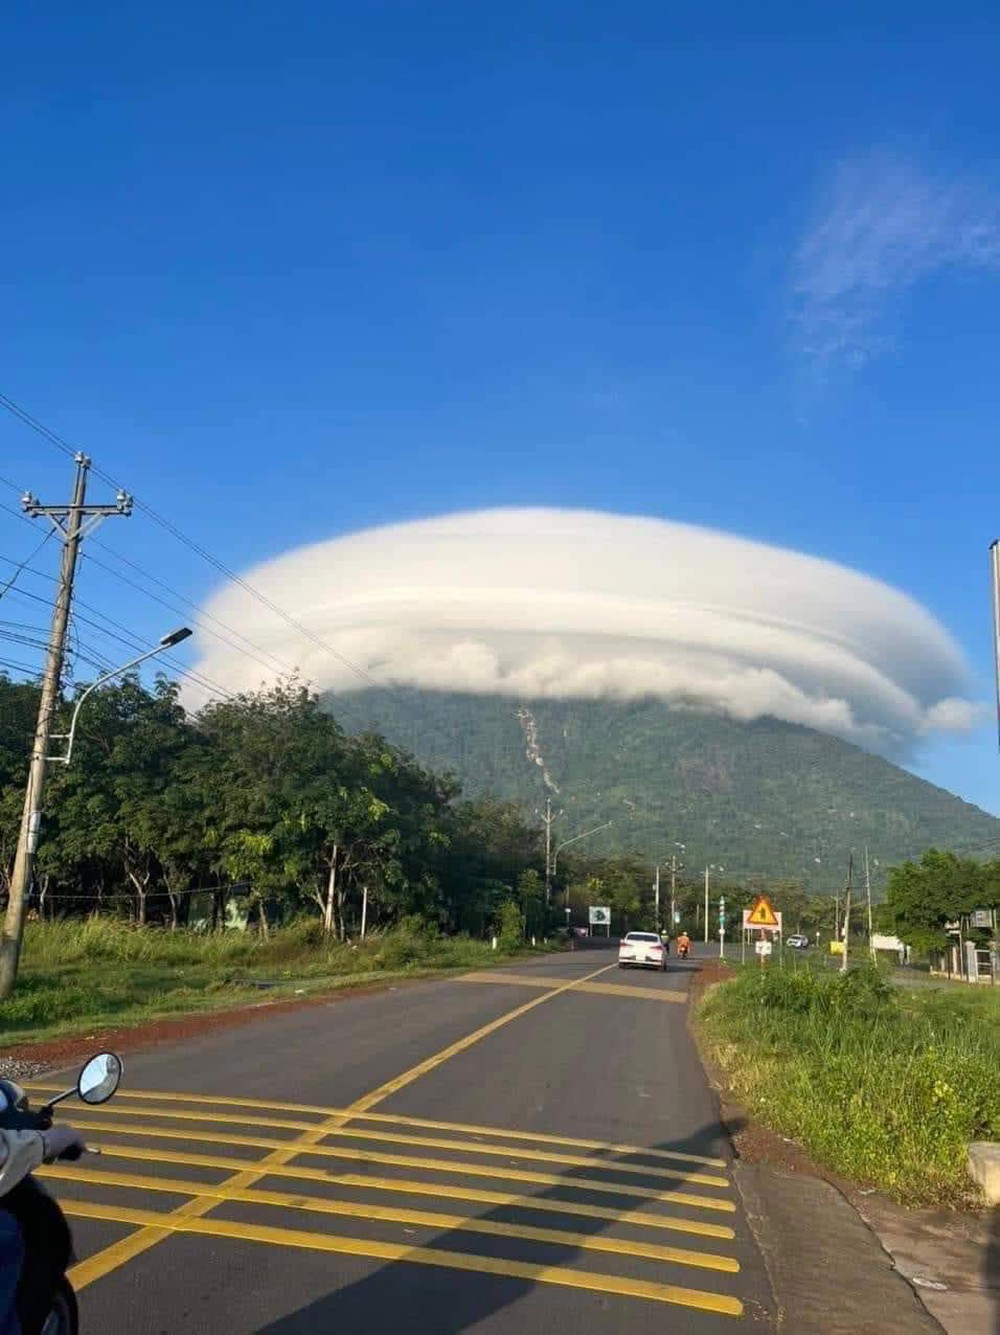 Đám mây ảo diệu xuất hiện trên đỉnh núi Bà Đen (Tây Ninh) khiến dân tình không ngừng xôn xao - Ảnh 3.